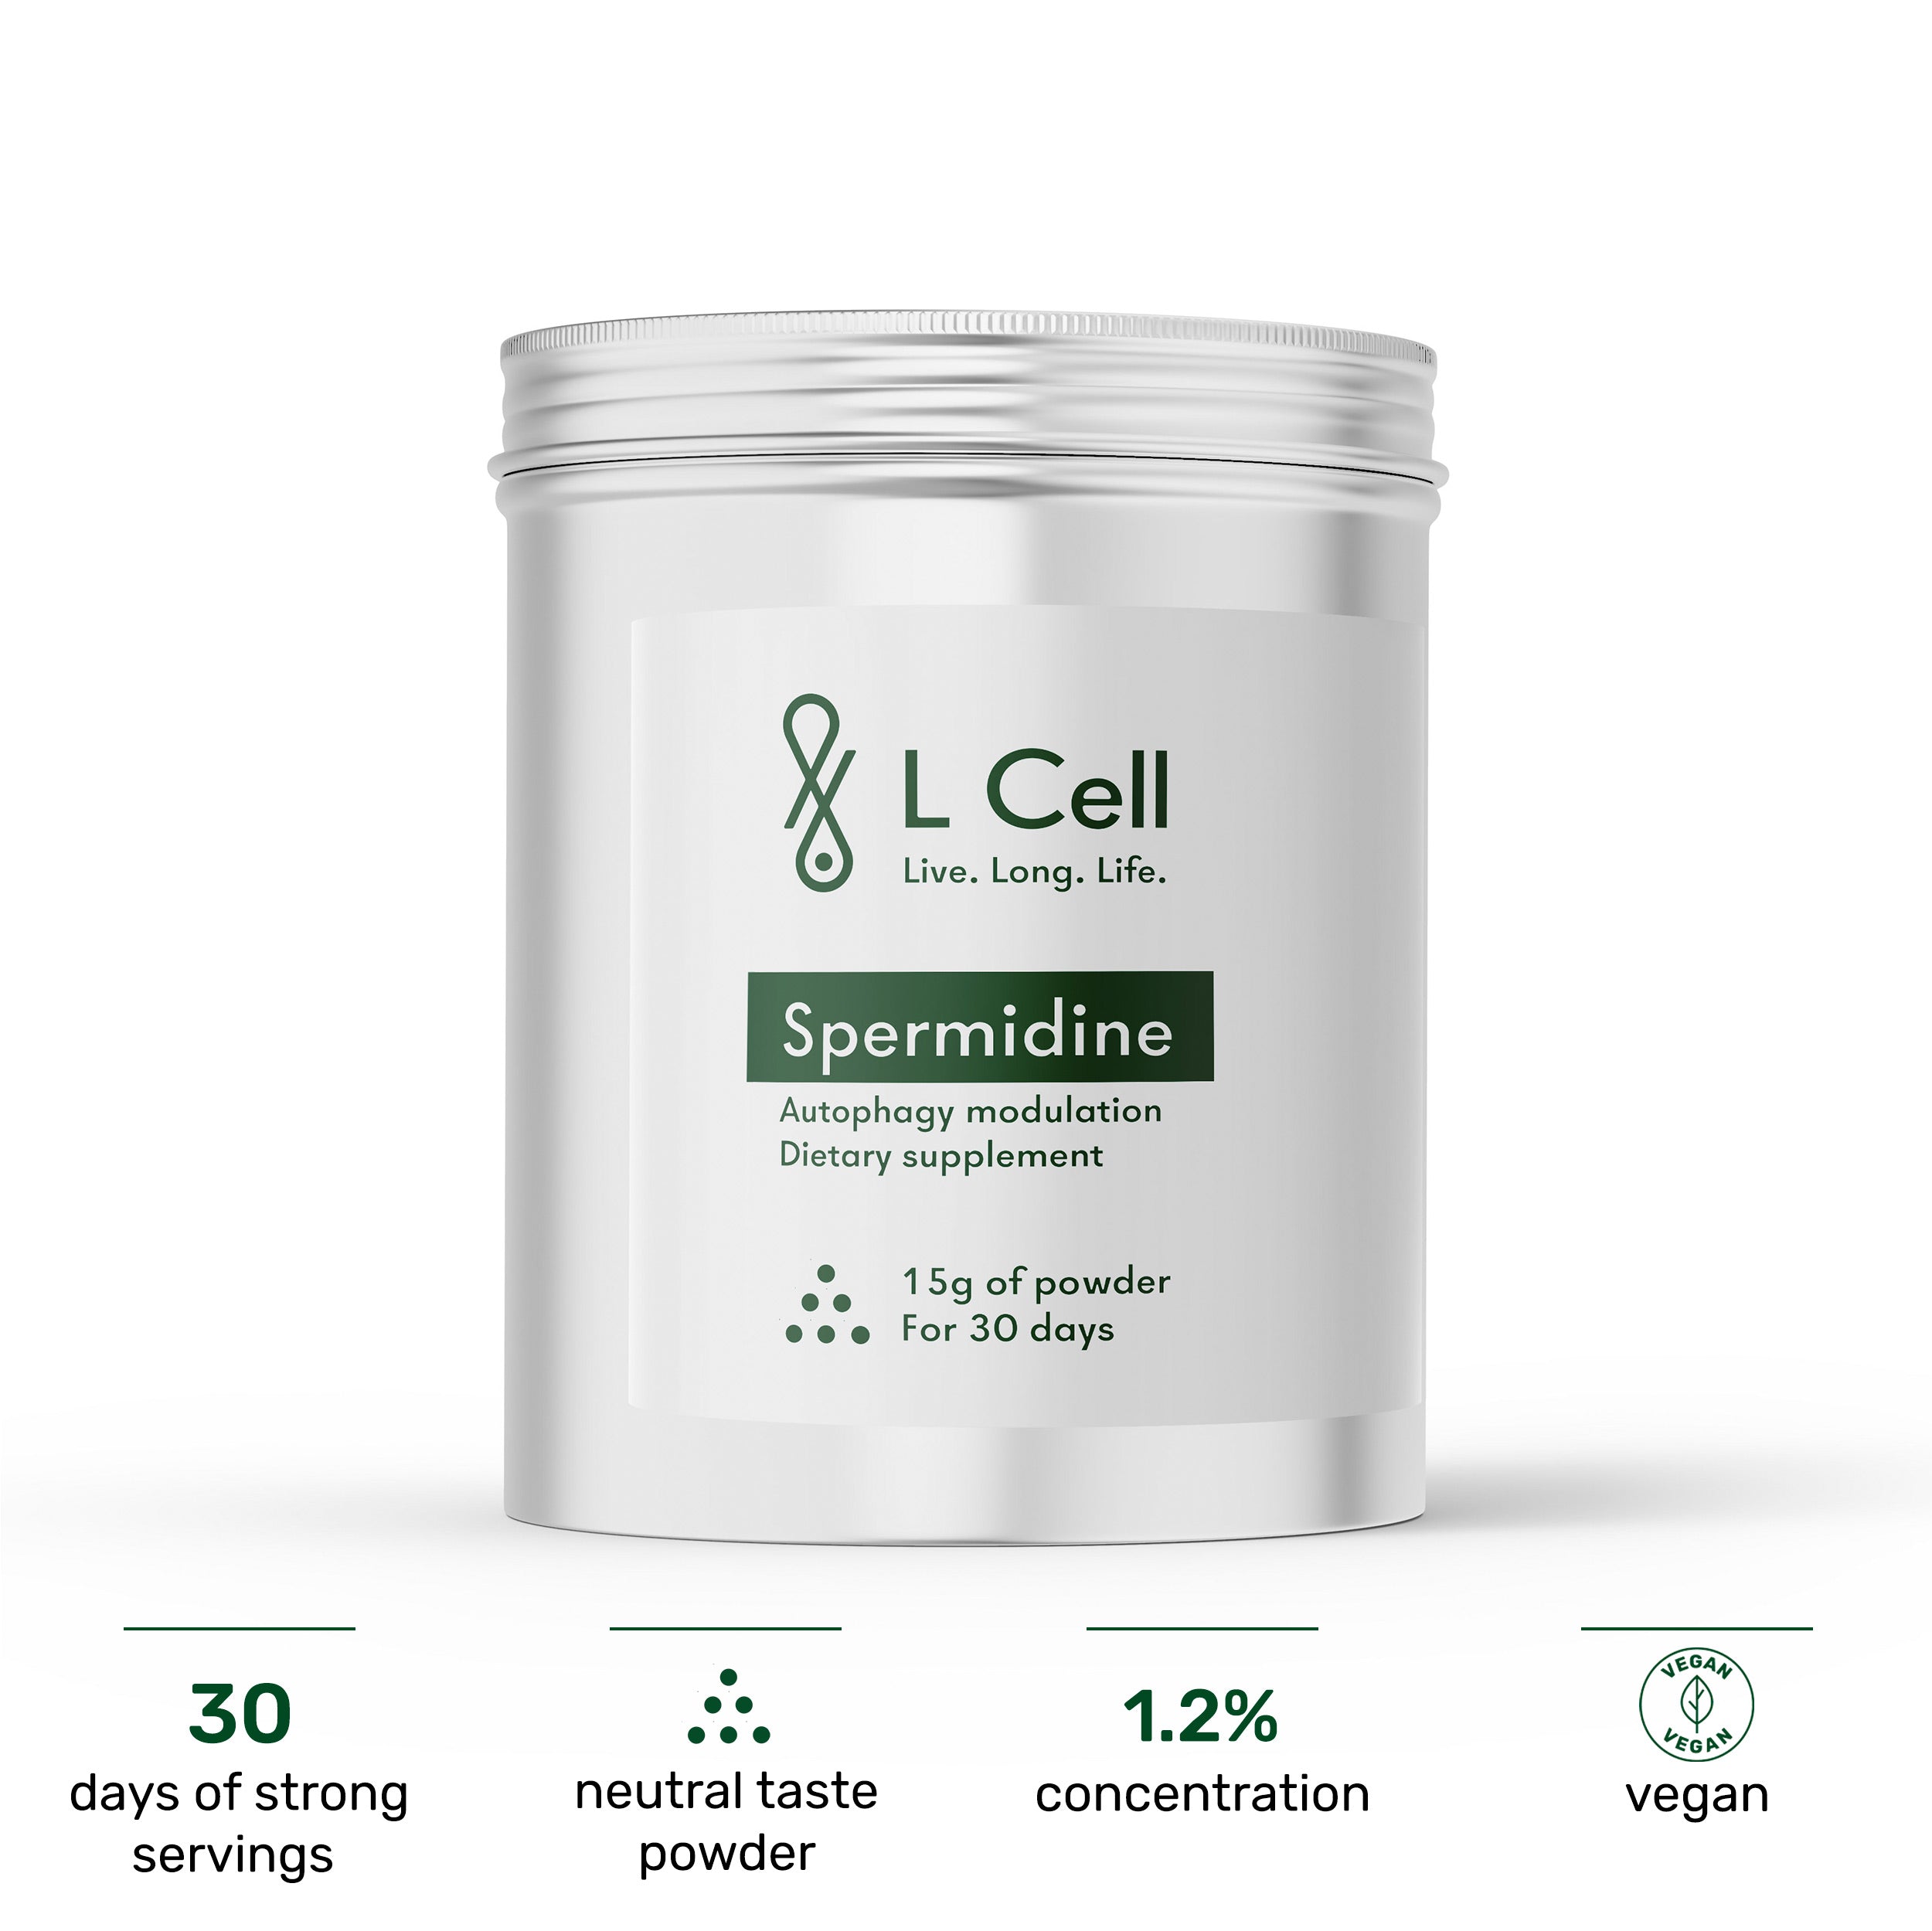 Spermidine Powder 15g (30 days, 1.2% concentration)